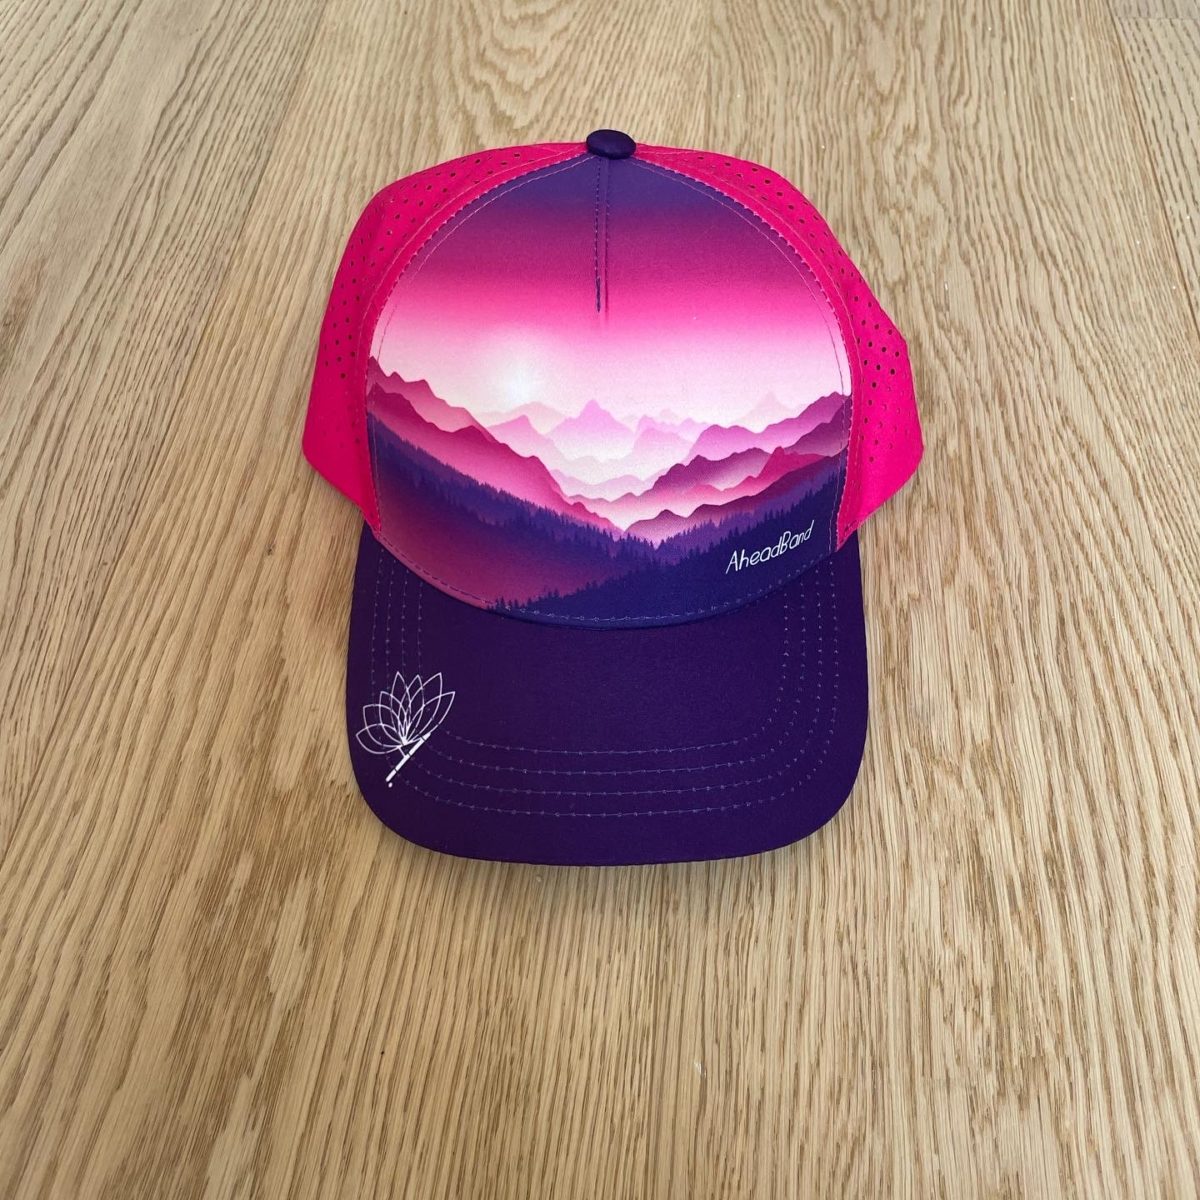 Casquette running Trucker, Inspirés par la nature, montagne, création suisse, Running au Bord du lac Léman, montagne et alpes, rose et violet